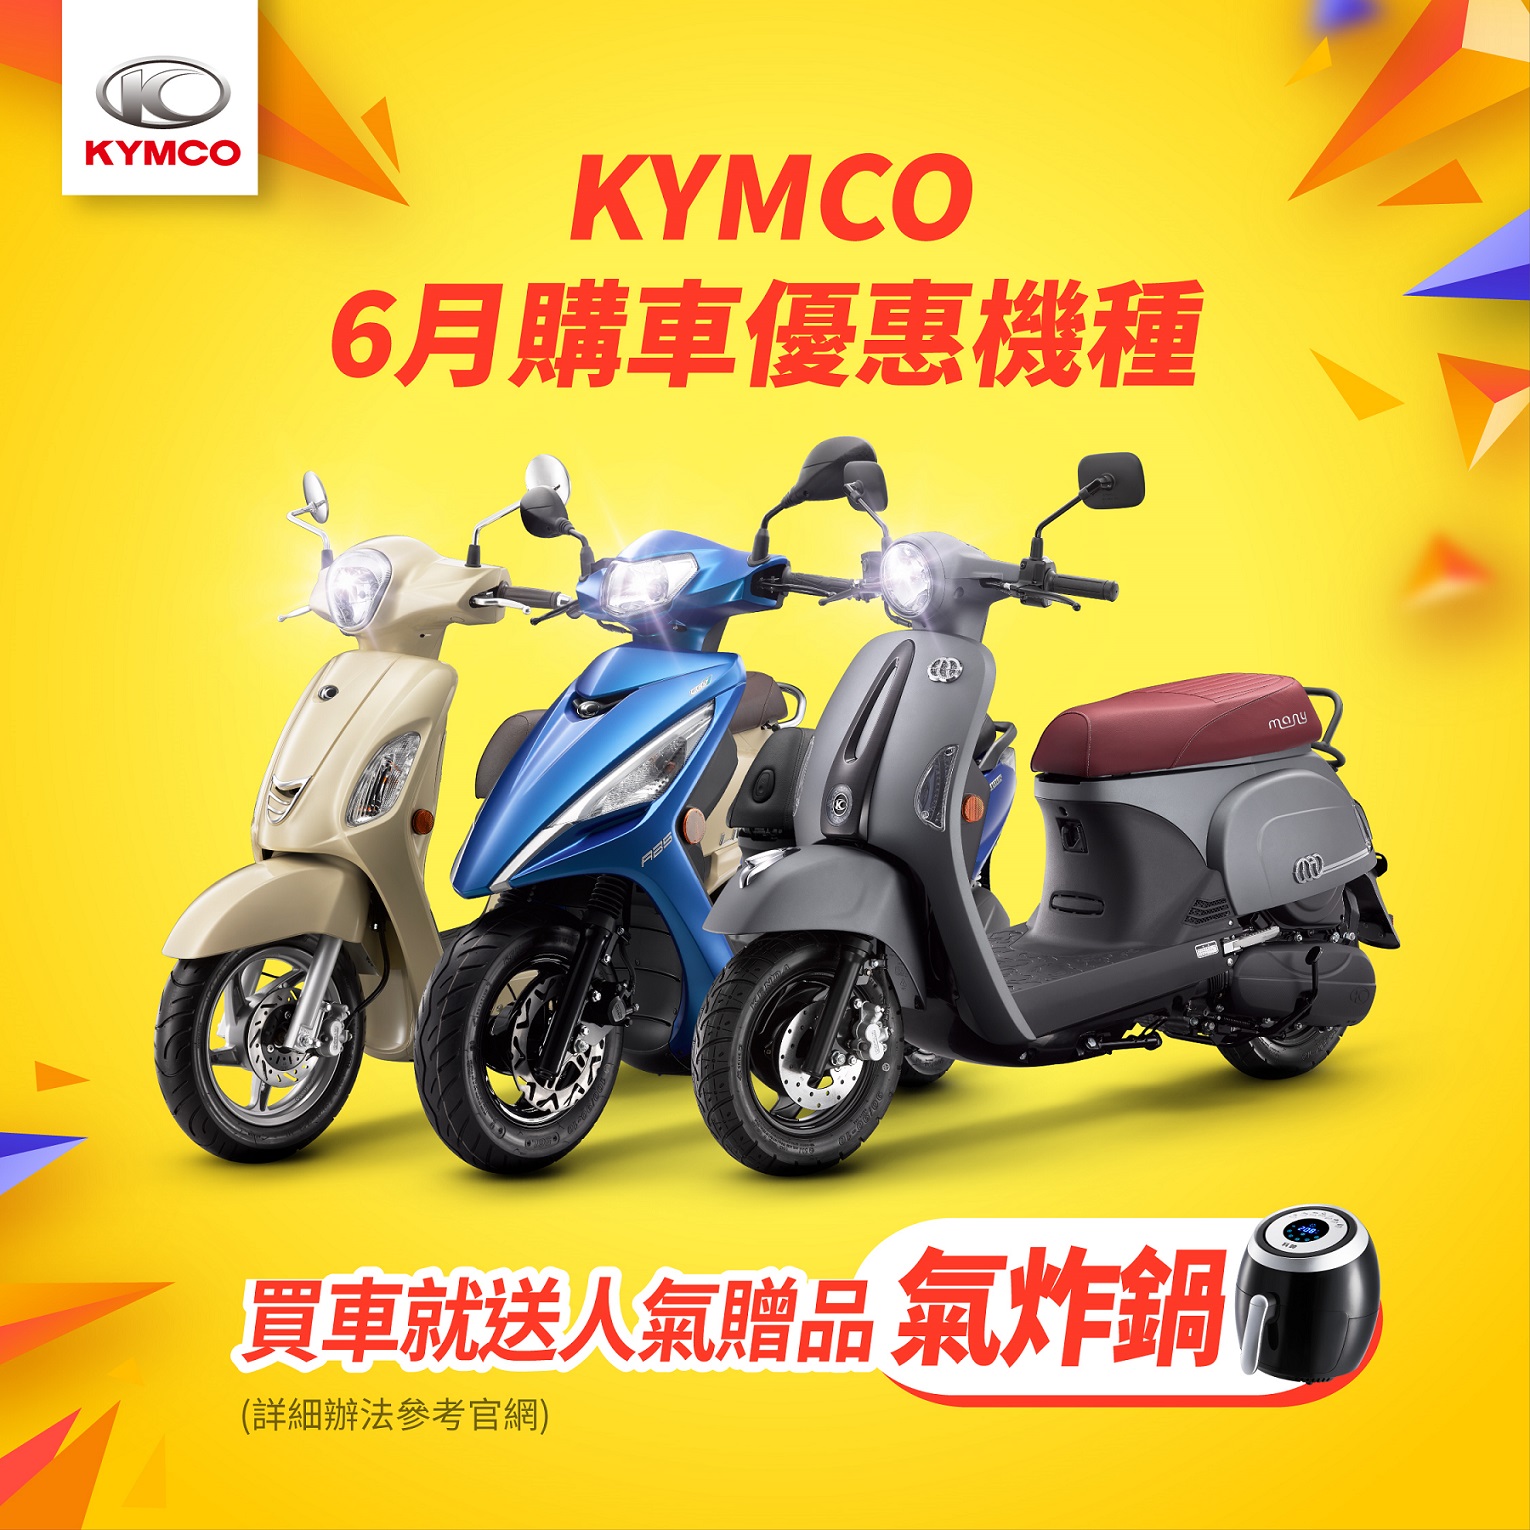 KYMCO 品牌周年慶推出 6 月購車優惠機種，LIKE、新名流、MANY 車系買車就送人氣贈品氣炸鍋。